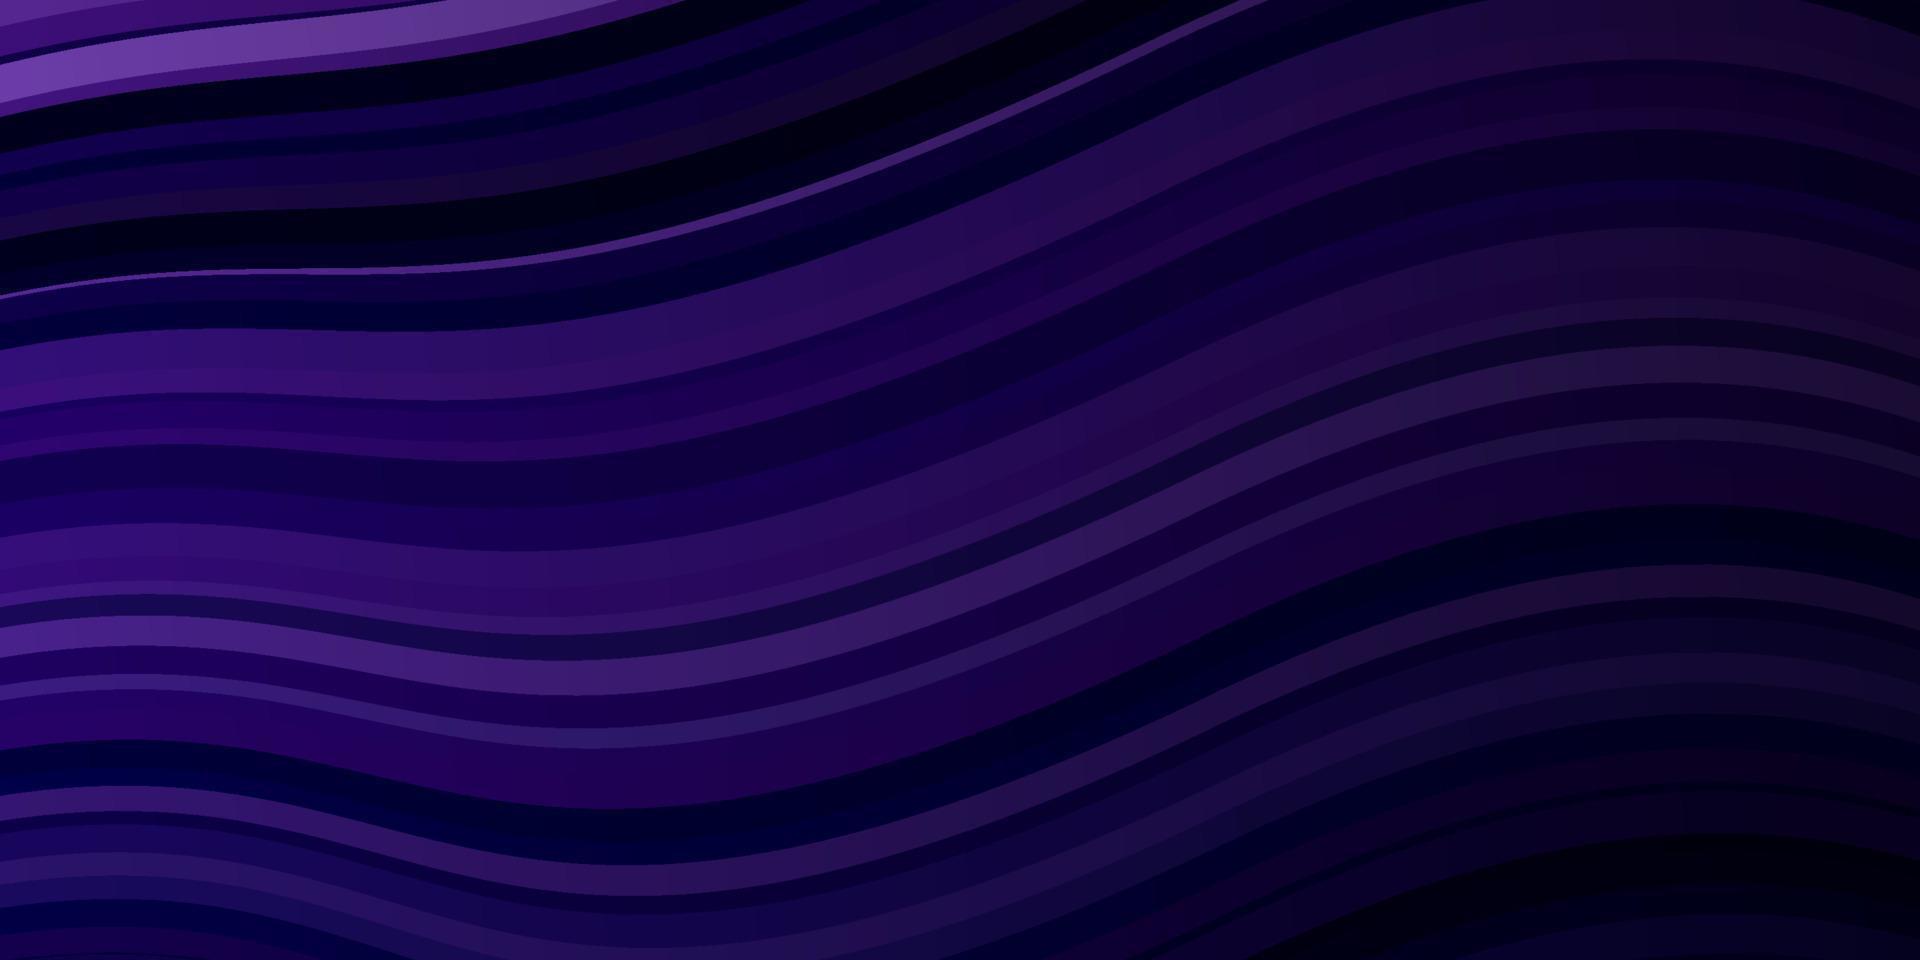 Dark Purple vector background with bent lines.